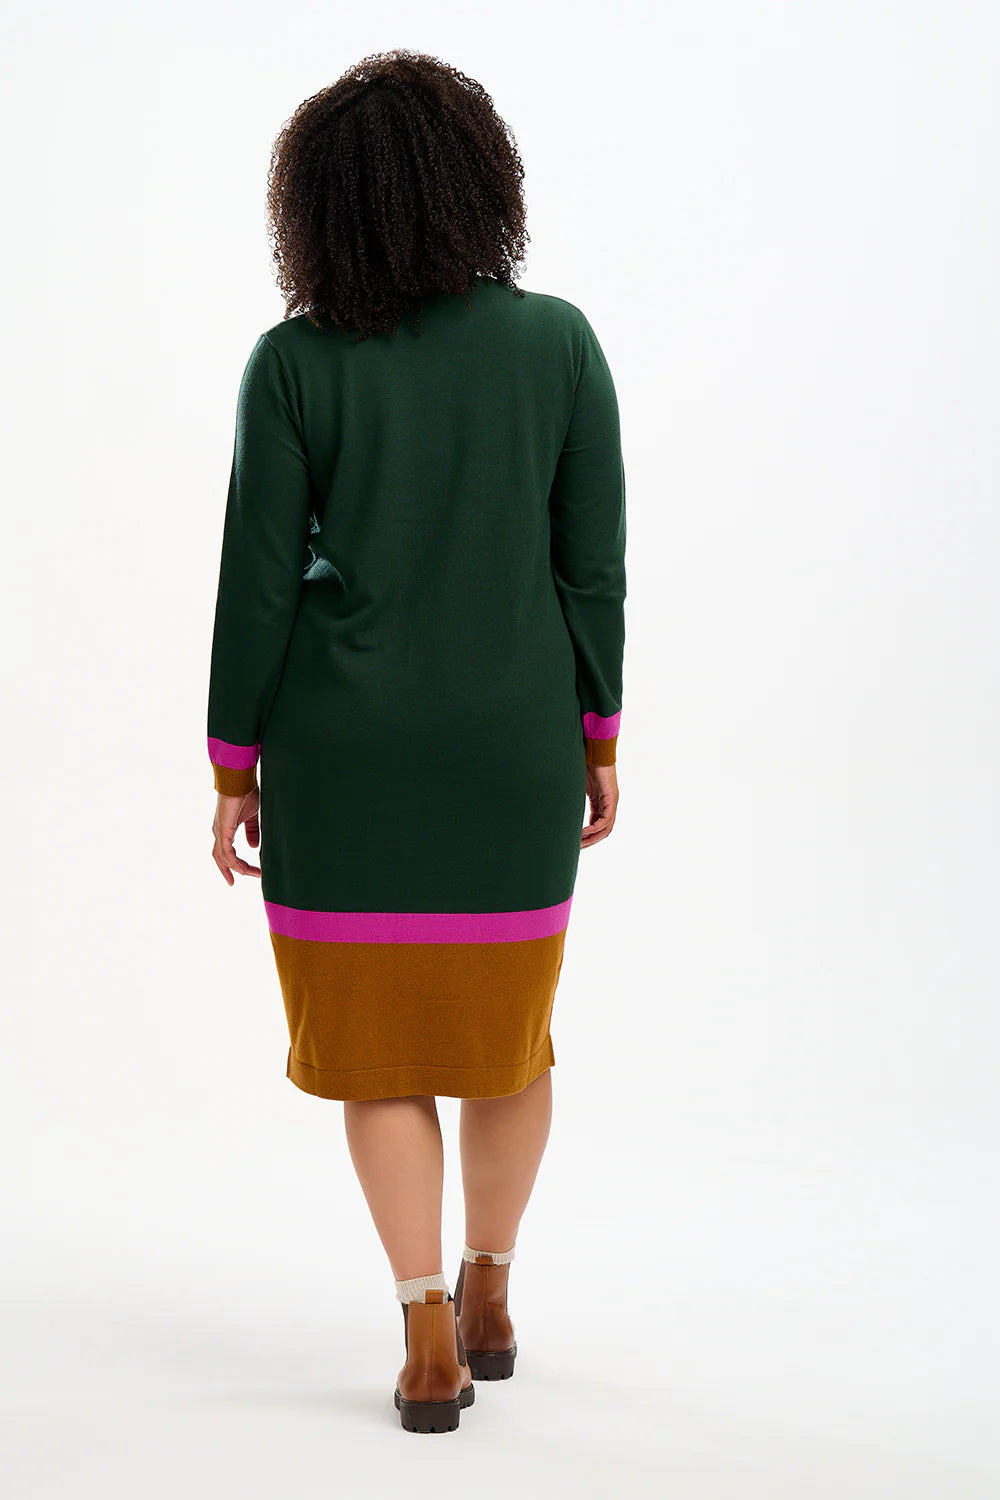 SUGARHILL BRIGHTON-Nala Midi Knit Dress - Dark Green, Autumn Colour Block